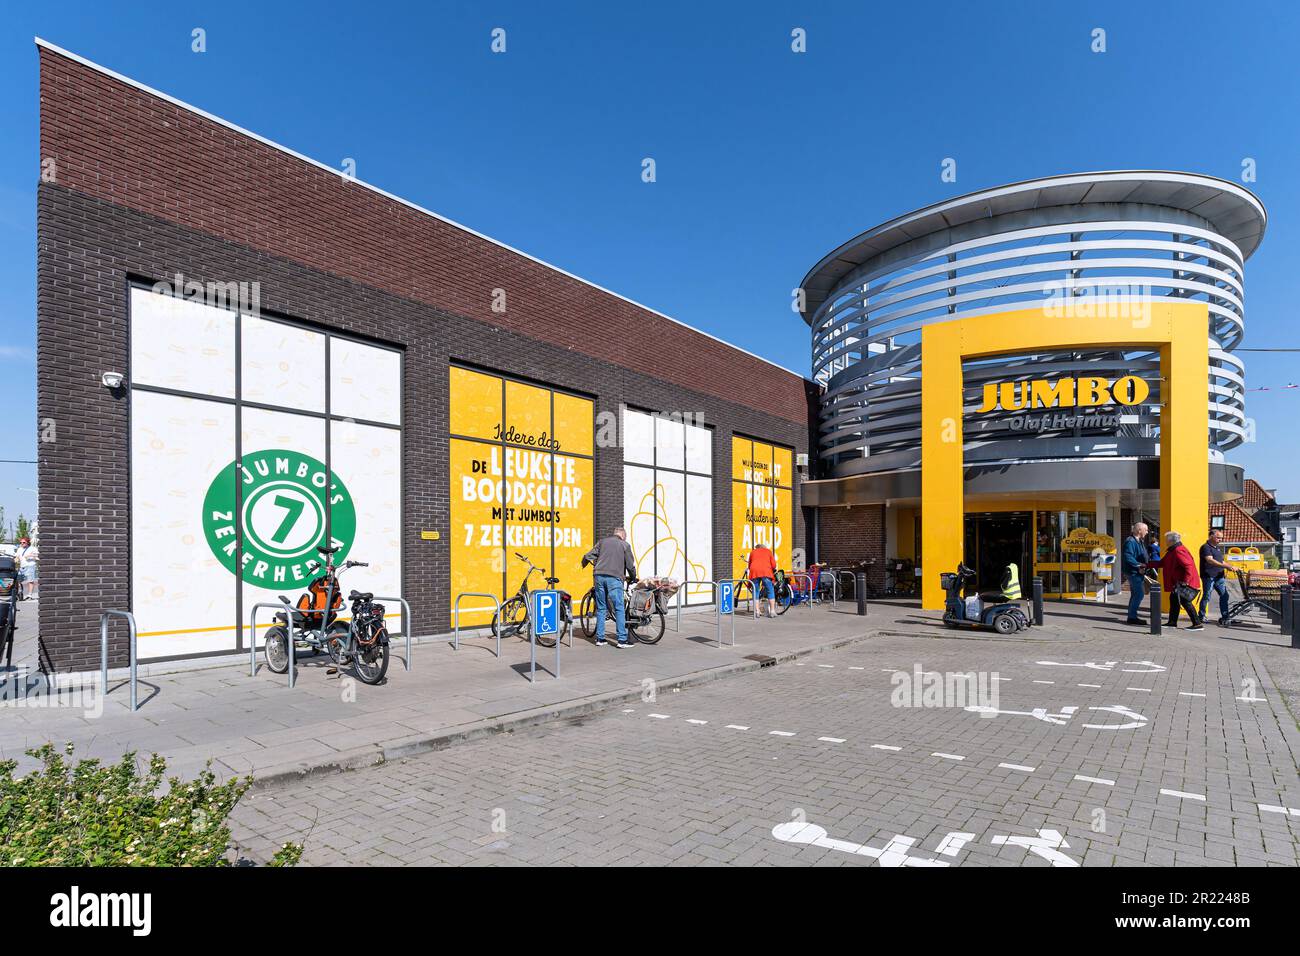 https://c8.alamy.com/comp/2R2248B/jumbo-supermarket-in-harlingen-netherlands-jumbo-is-the-second-largest-supermarket-chain-in-the-netherlands-2R2248B.jpg